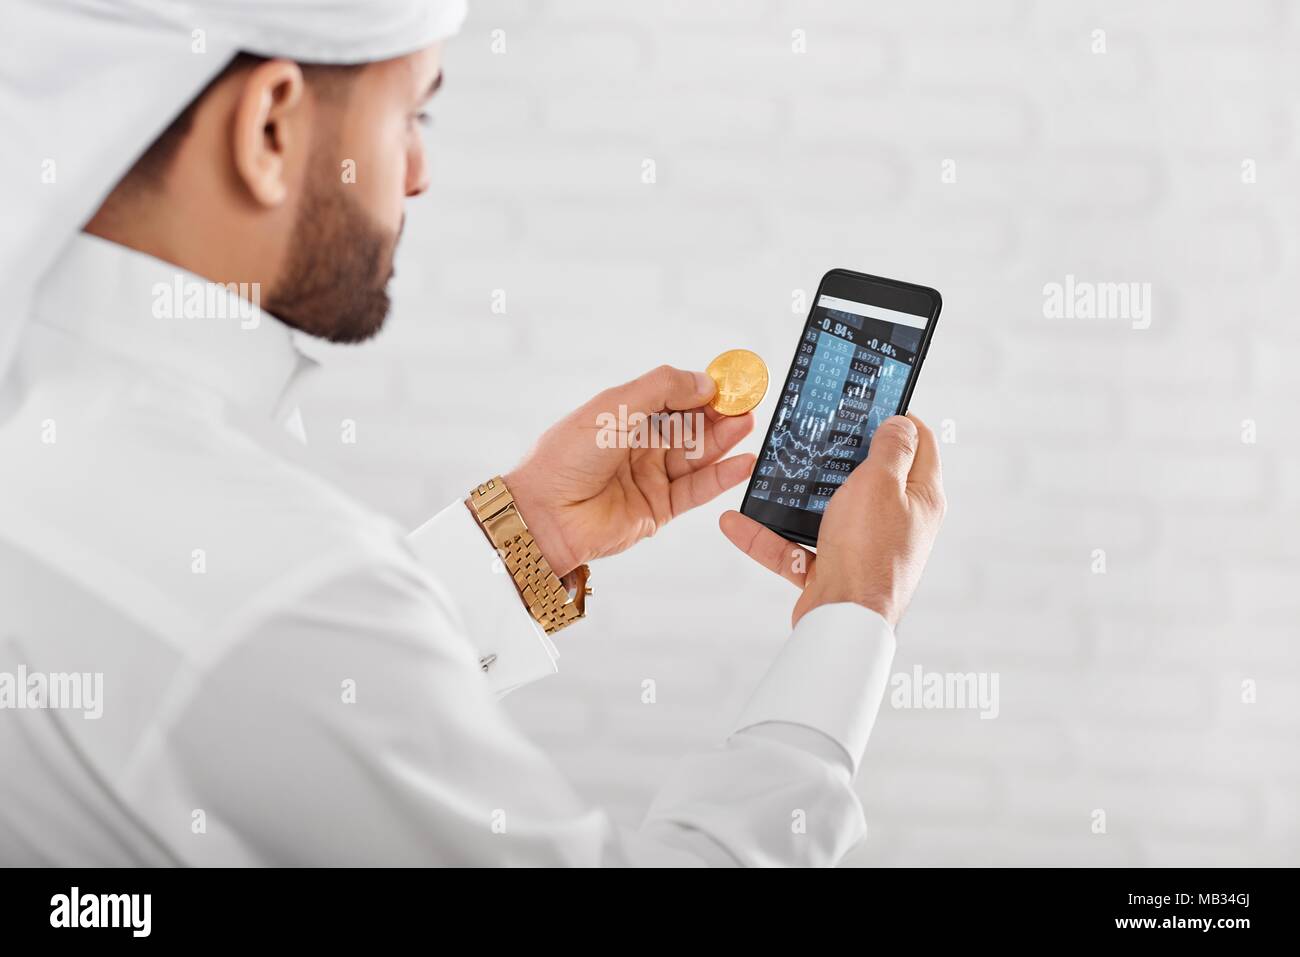 Dans cryptotrader musulmane arabe traditionnel blanc porter des keepins bitcoin or et téléphone mobile. Il a golden watch sur la main gauche. Un homme a l'air très occupé Banque D'Images